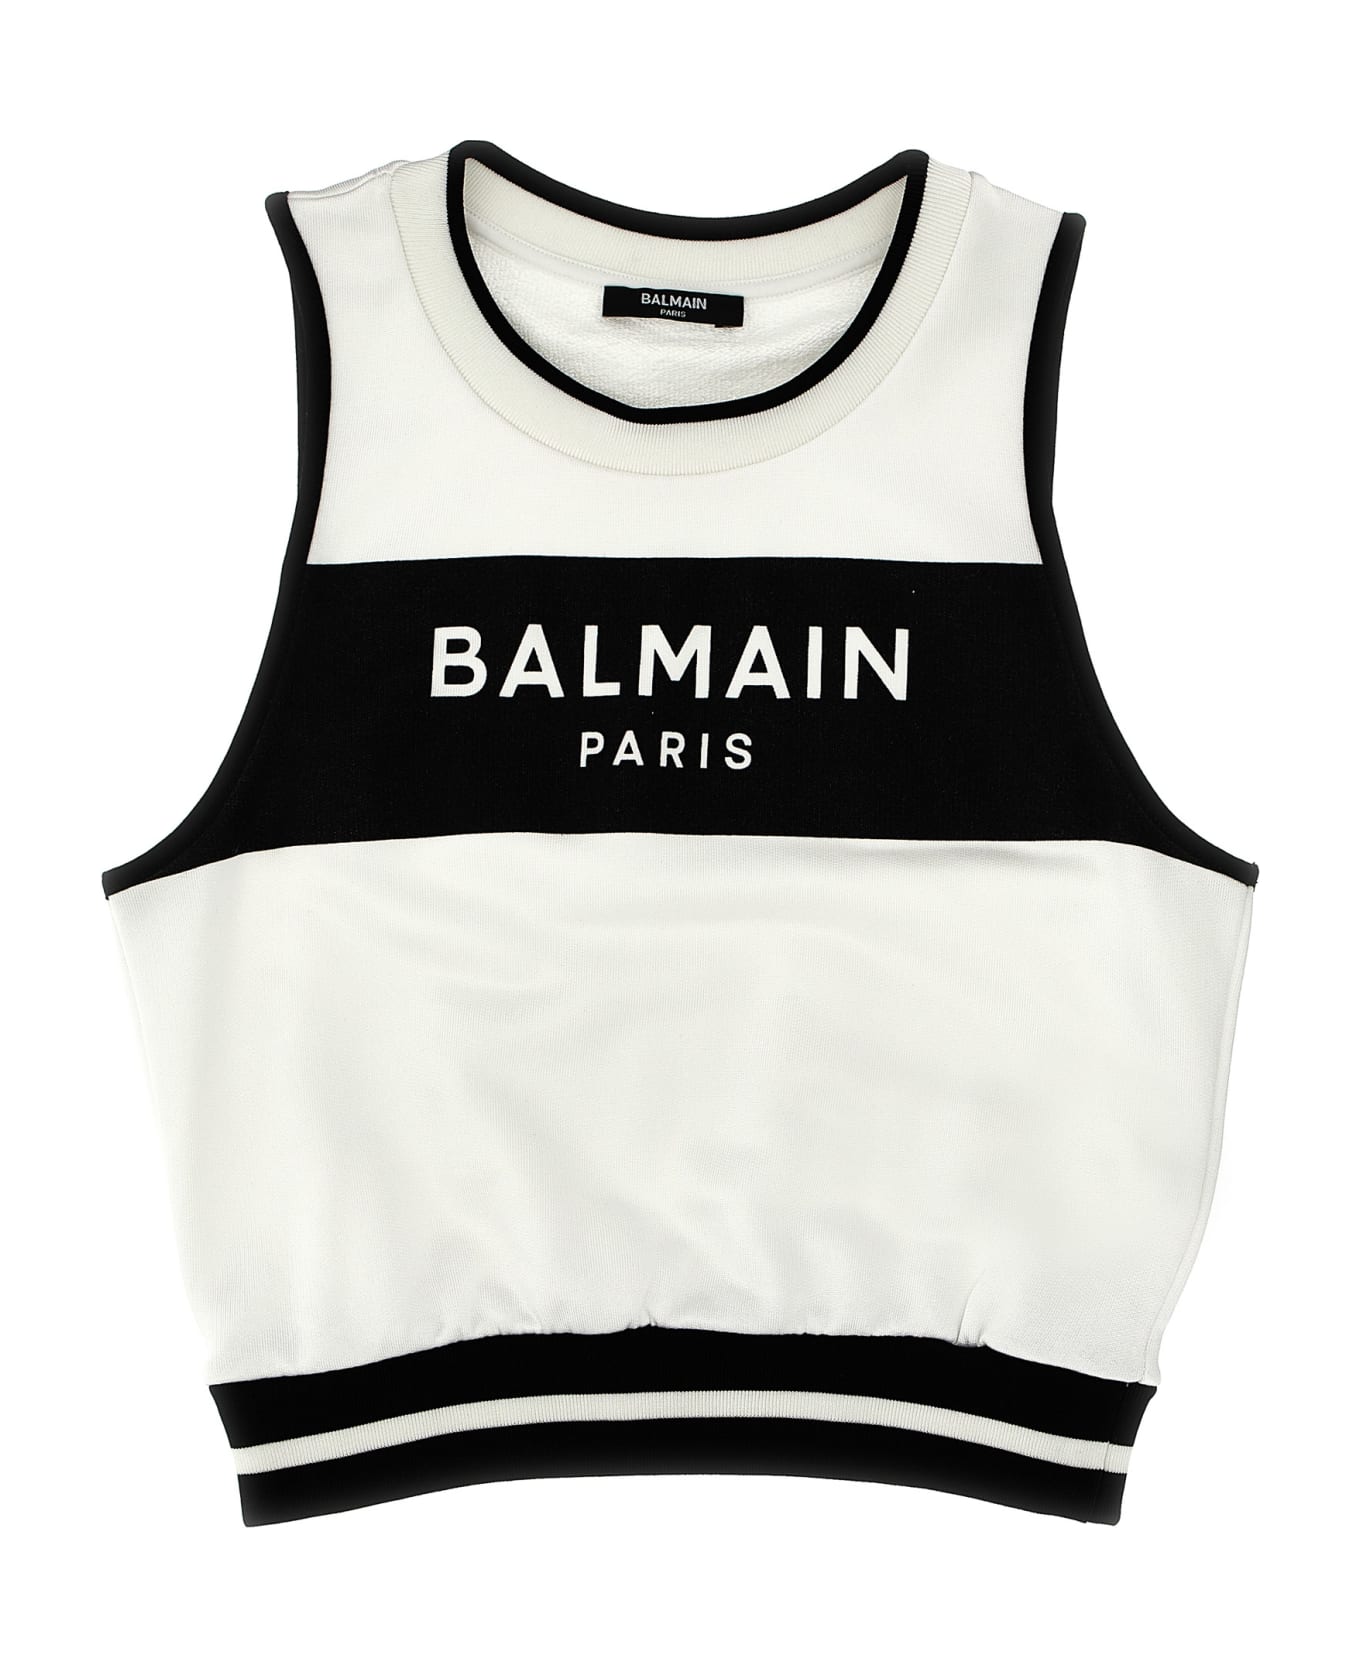 Balmain Logo Tank Top - White/Black